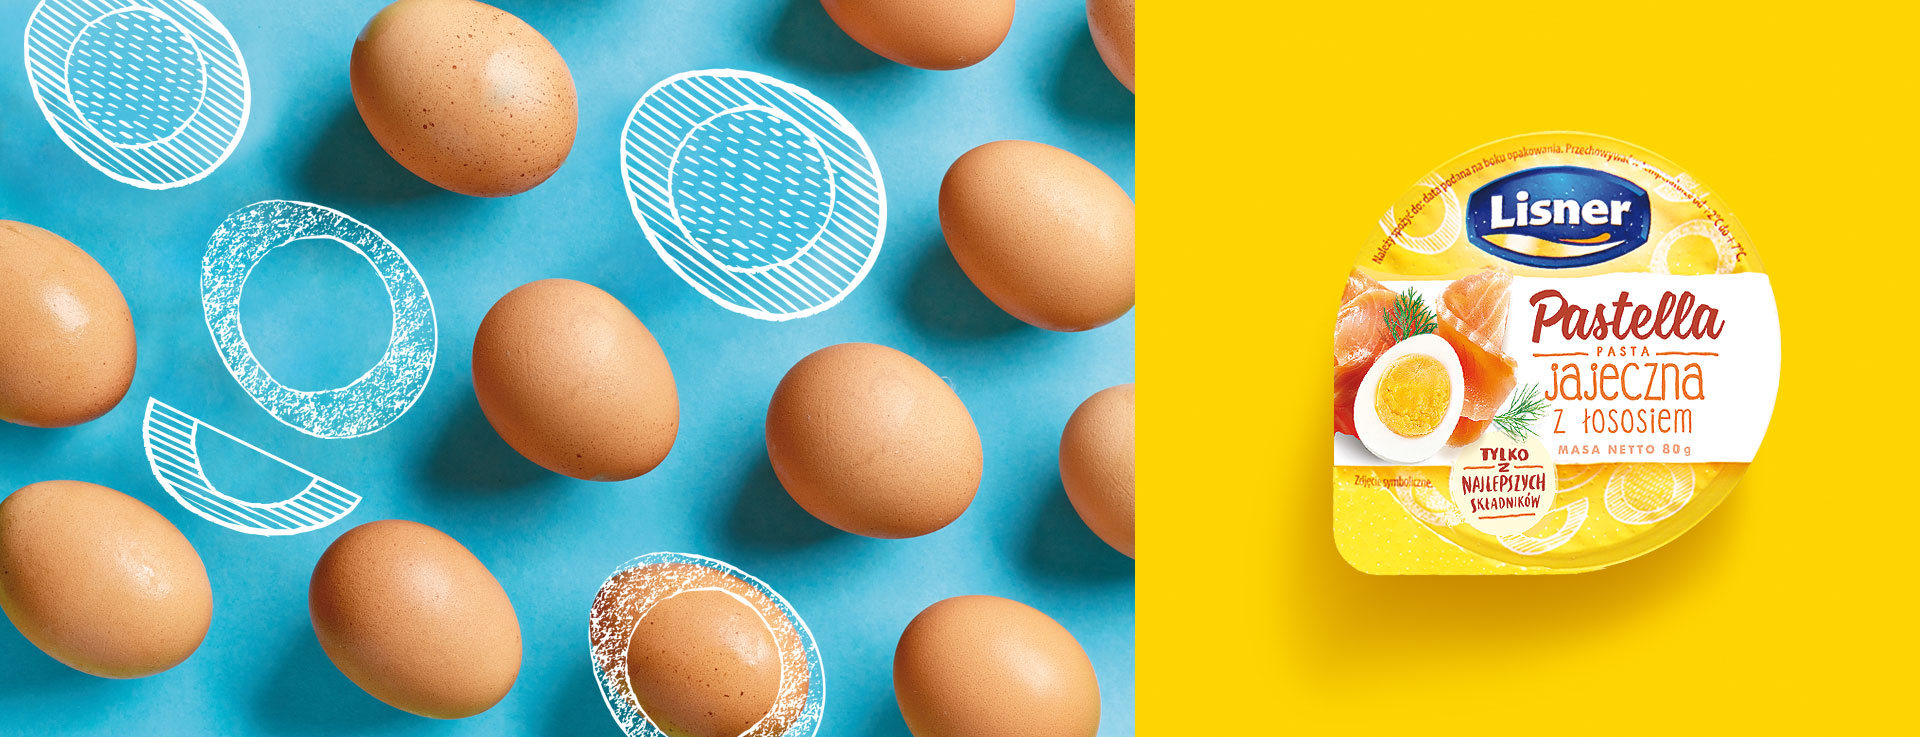 Design Lisner Pastella - pasta jajeczna z łososiem - zaprojektowany przez PND Futura